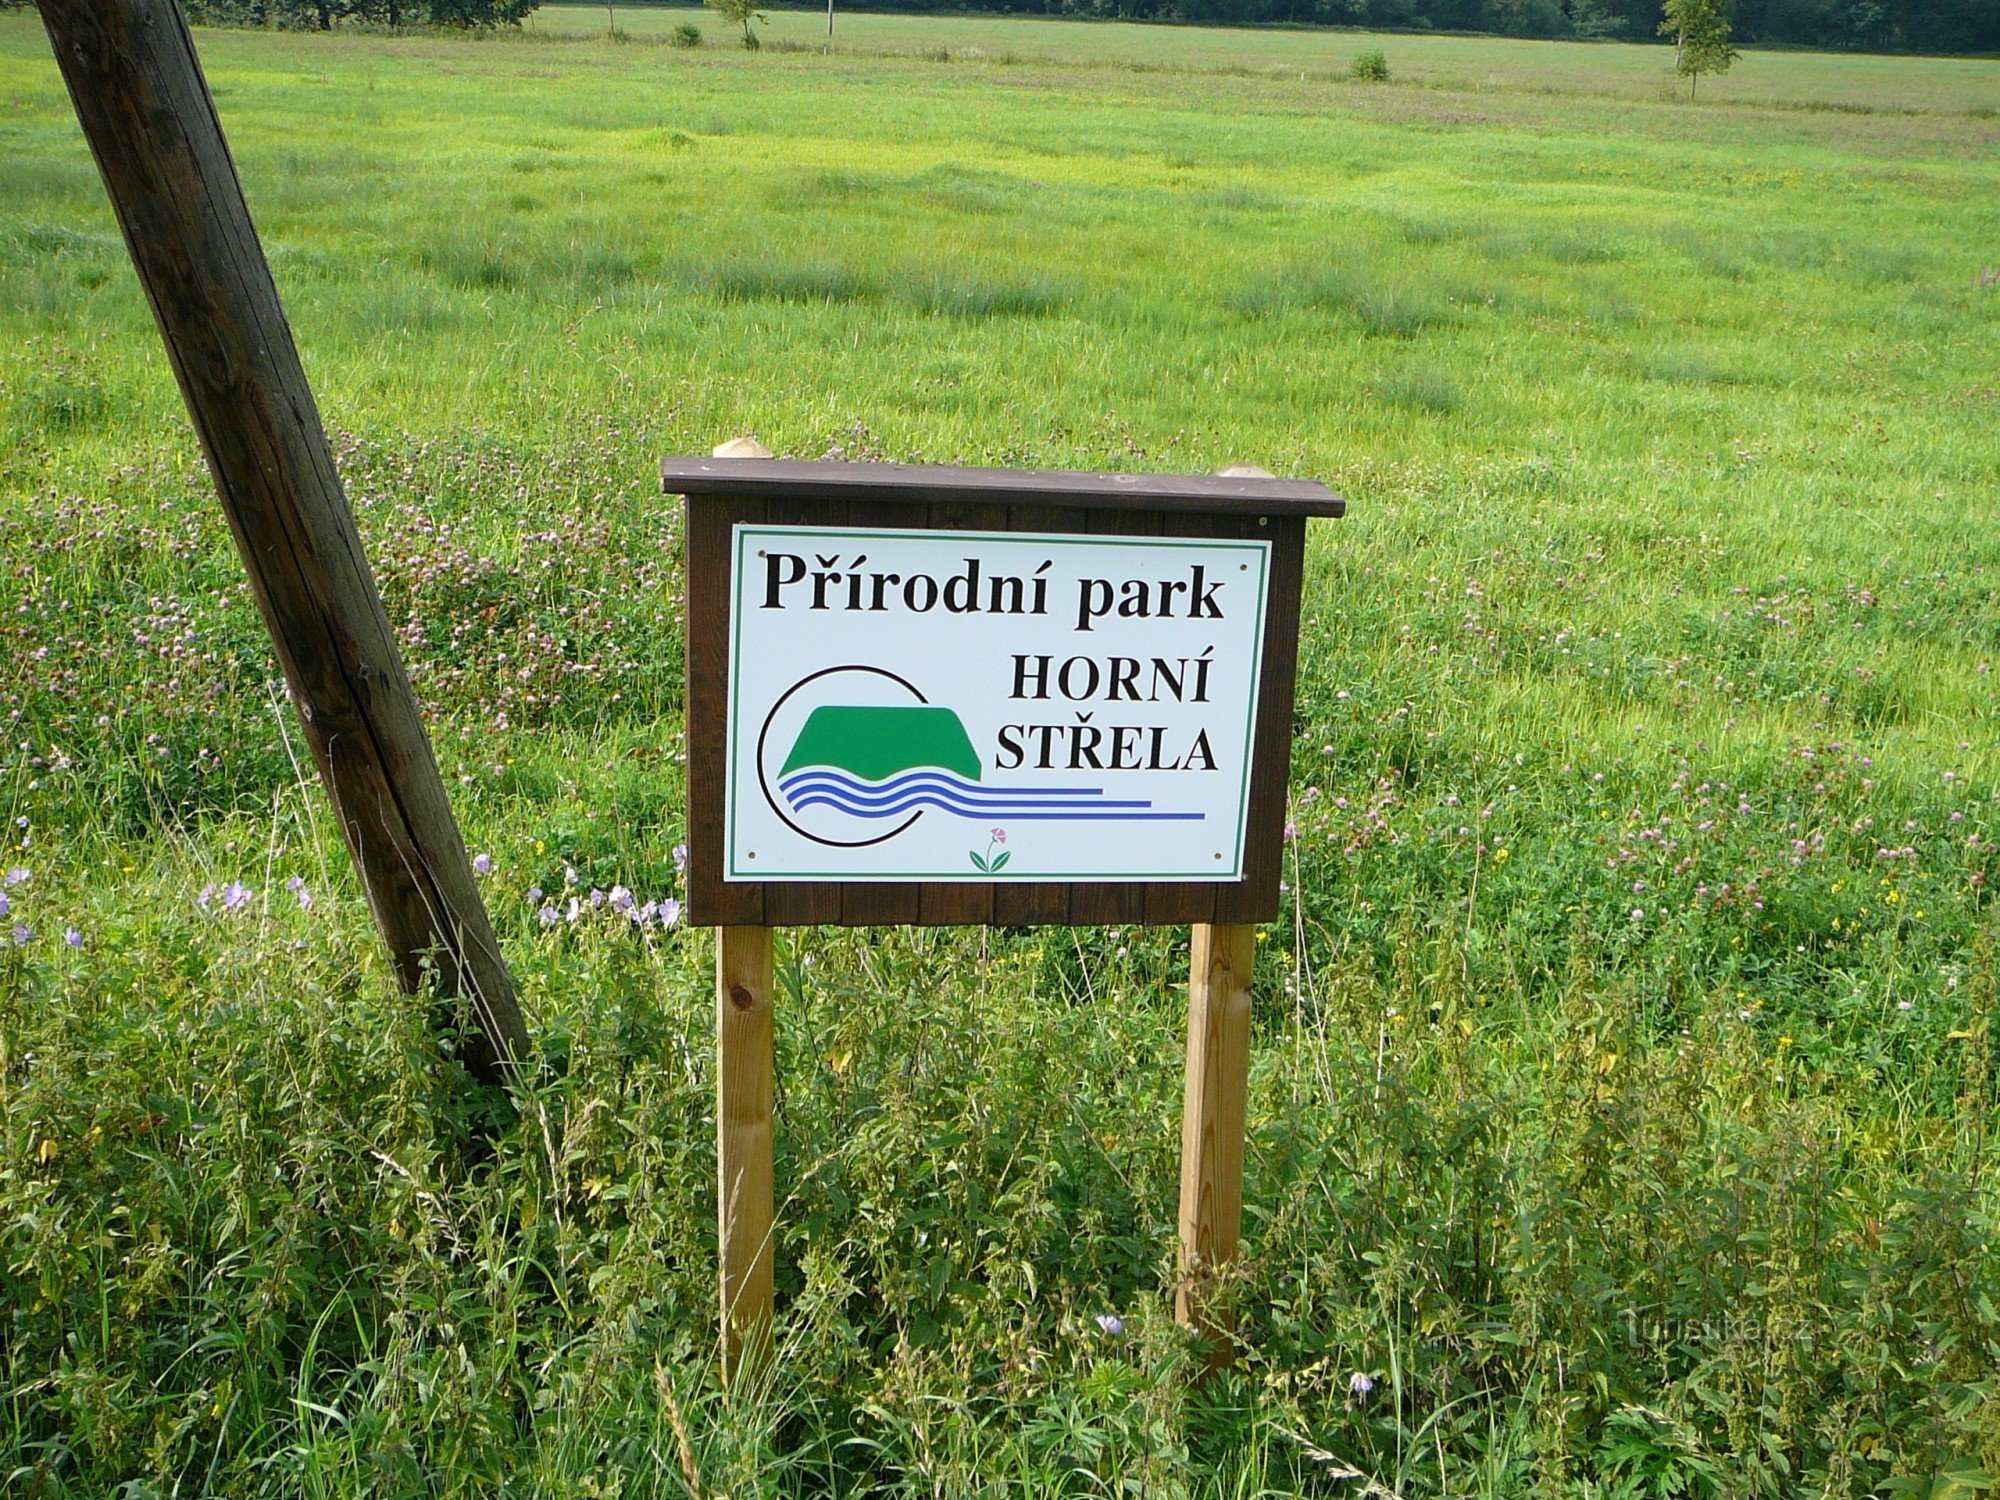 Marcação do limite do parque natural Horní Strěla perto de Čichořice